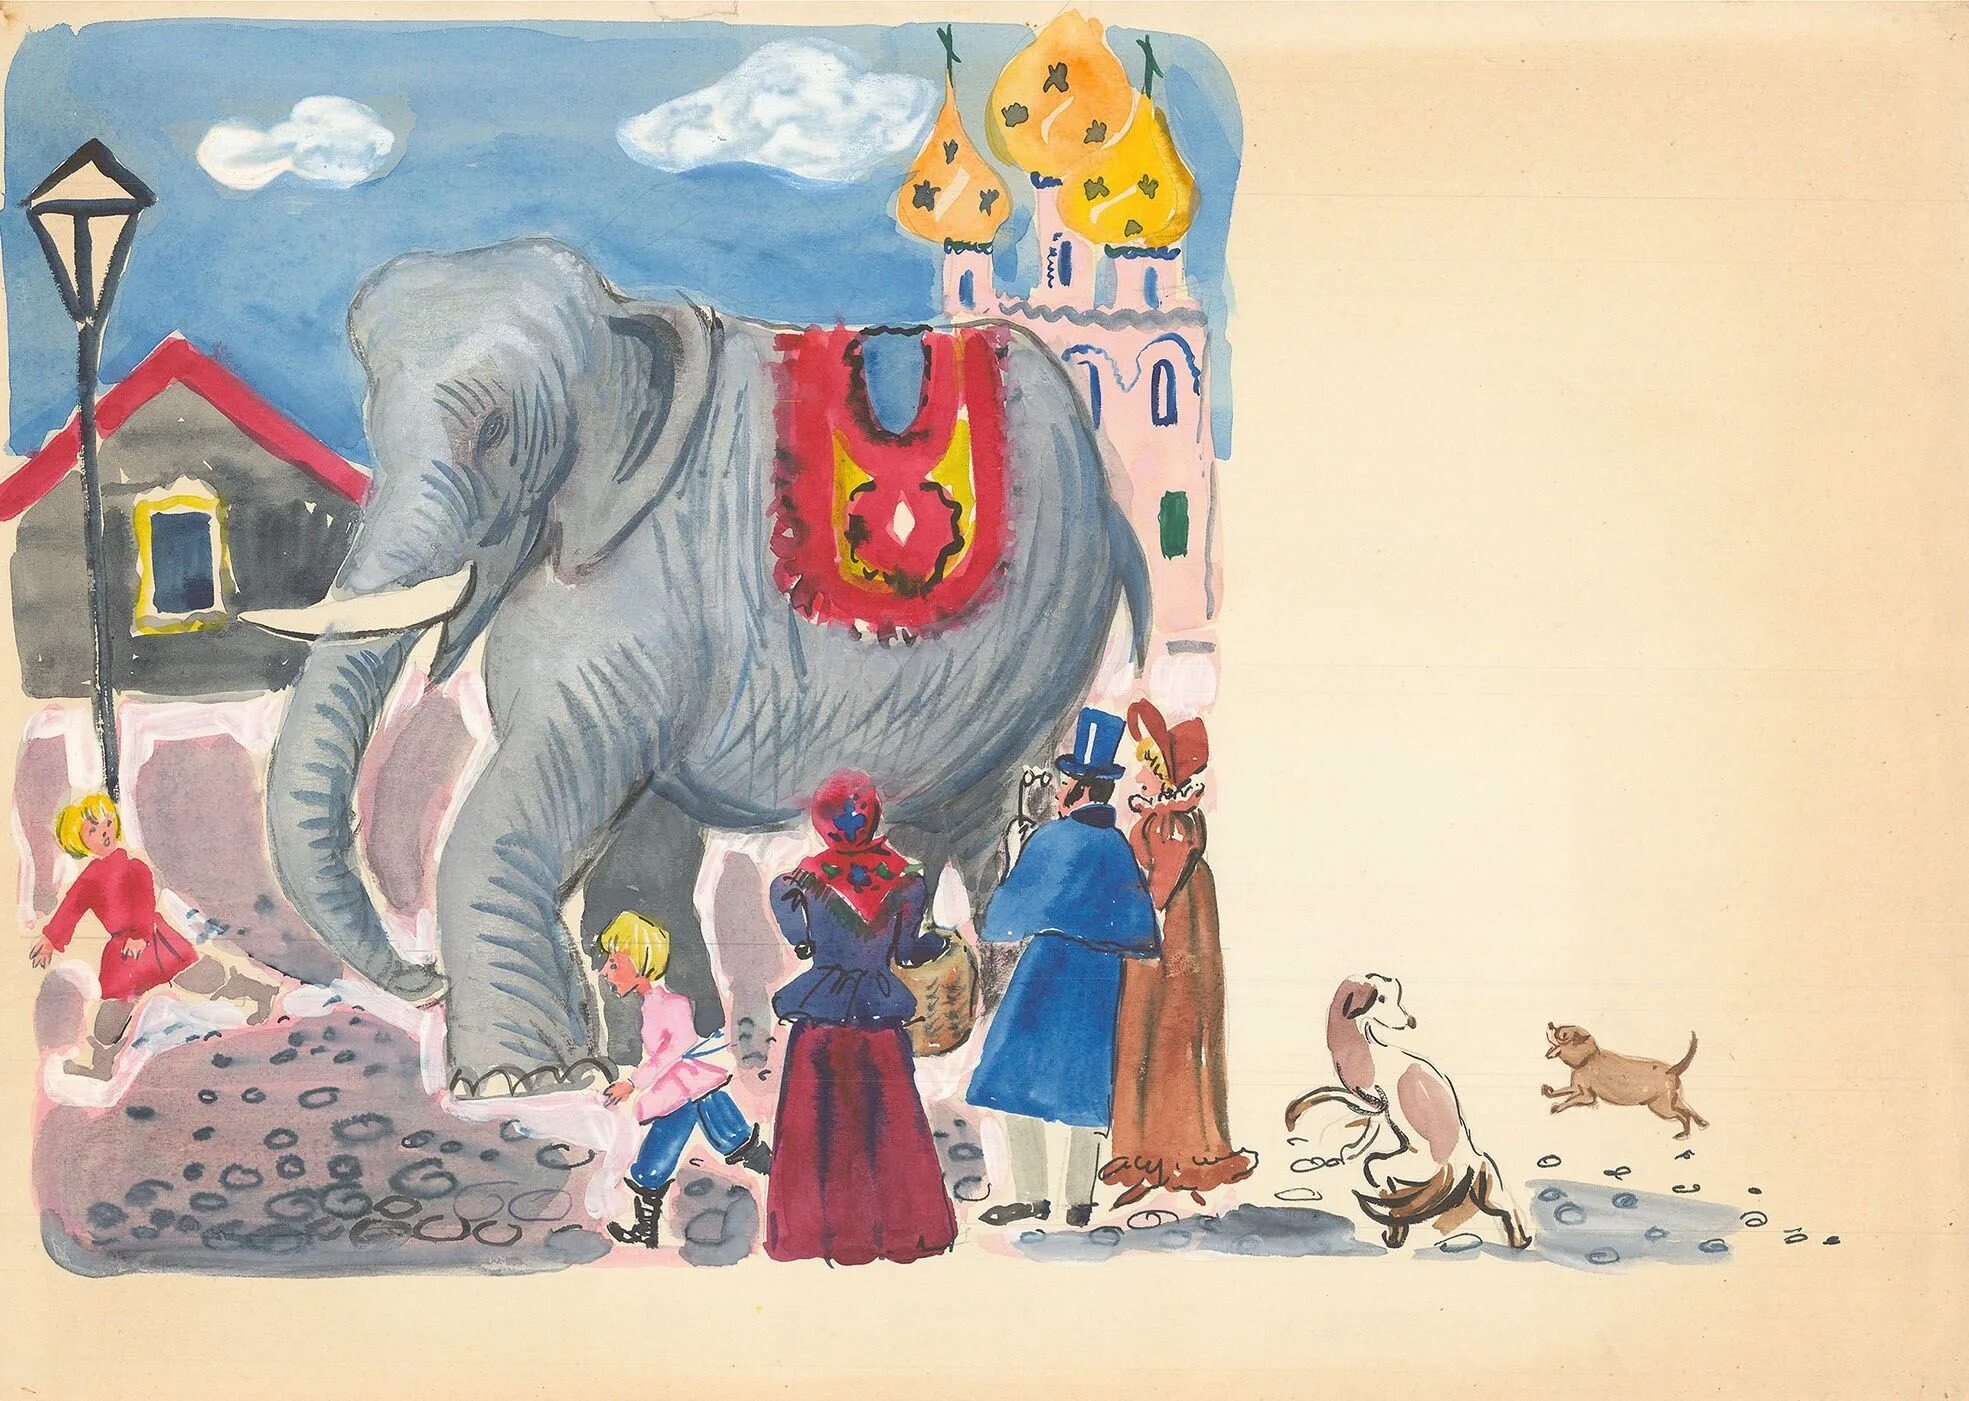 Басня слон и моська Крылов. Иллюстрация к басне слон и моська. Рисунок к басне Крылова слон и моська.